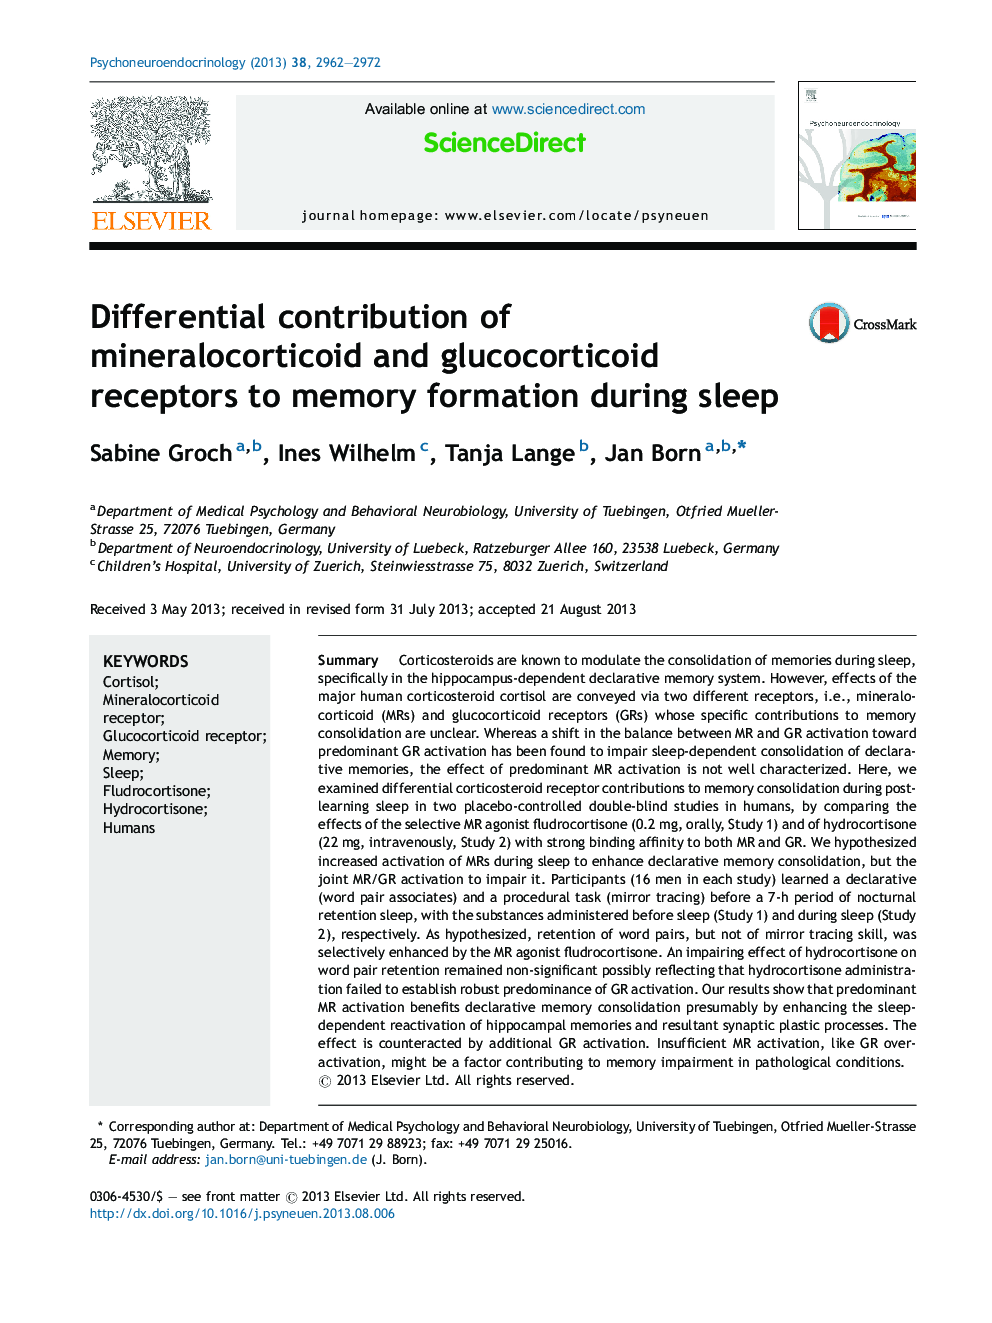 سهم دیفرانسیل از گیرنده های مواد معدنی و گلوکوکورتیکوئیدی به شکل گیری حافظه در طول خواب 